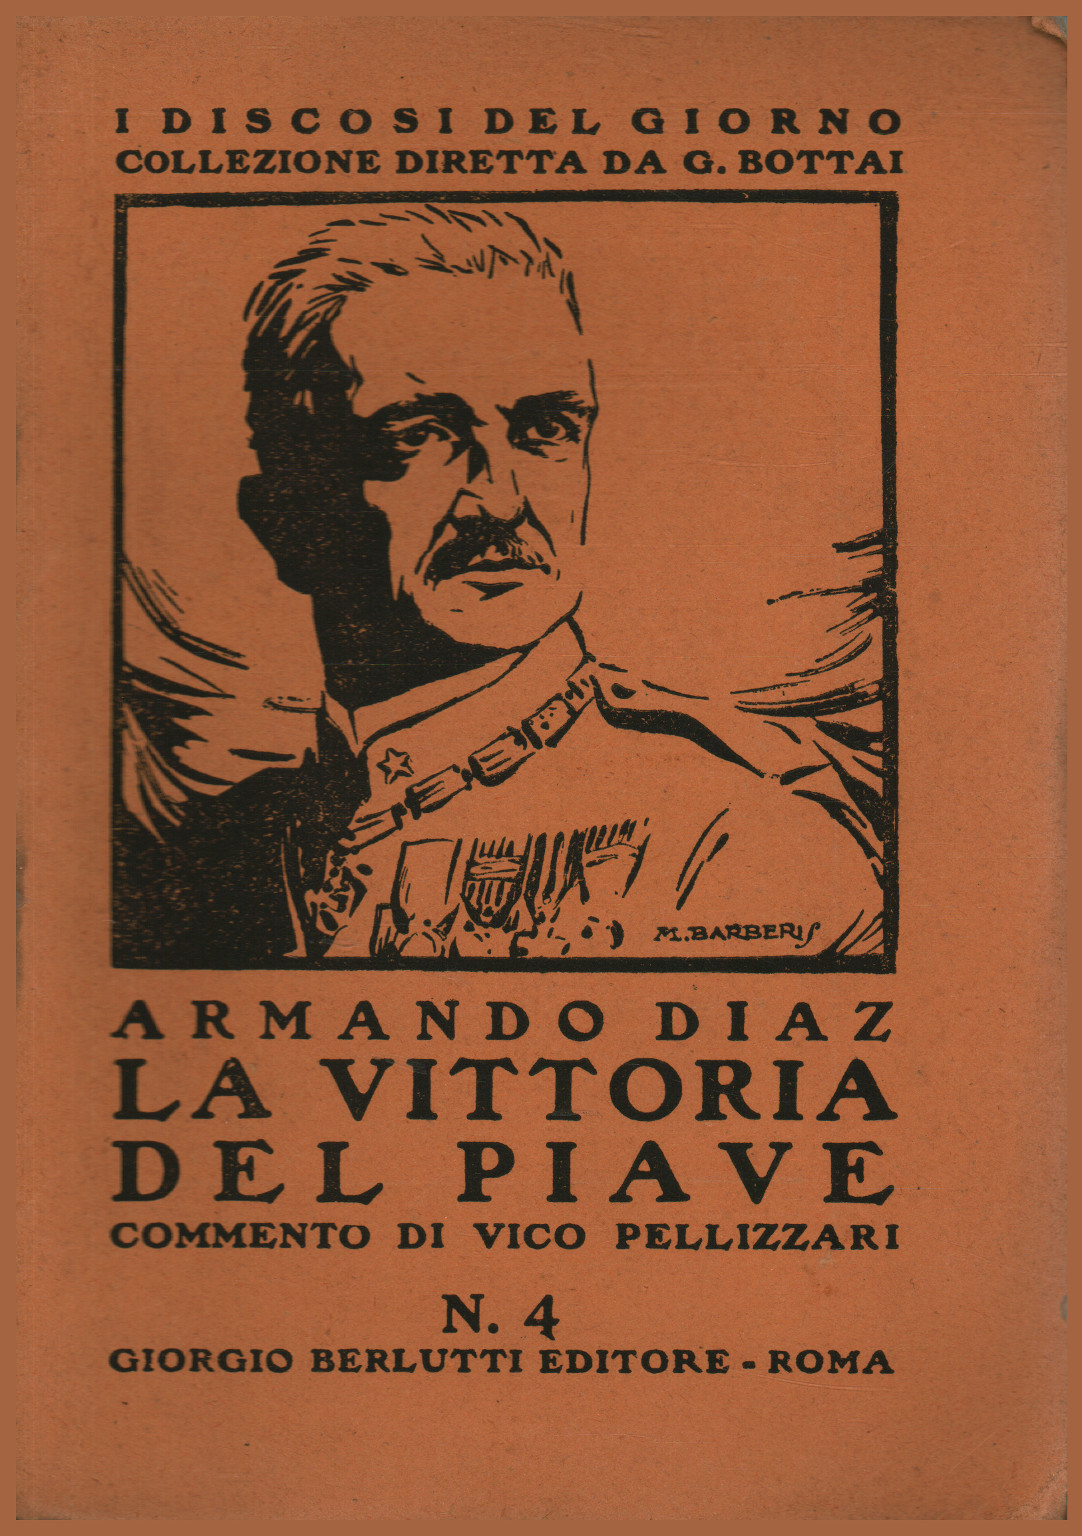 The victory of the Piave, Vico Pellizzari